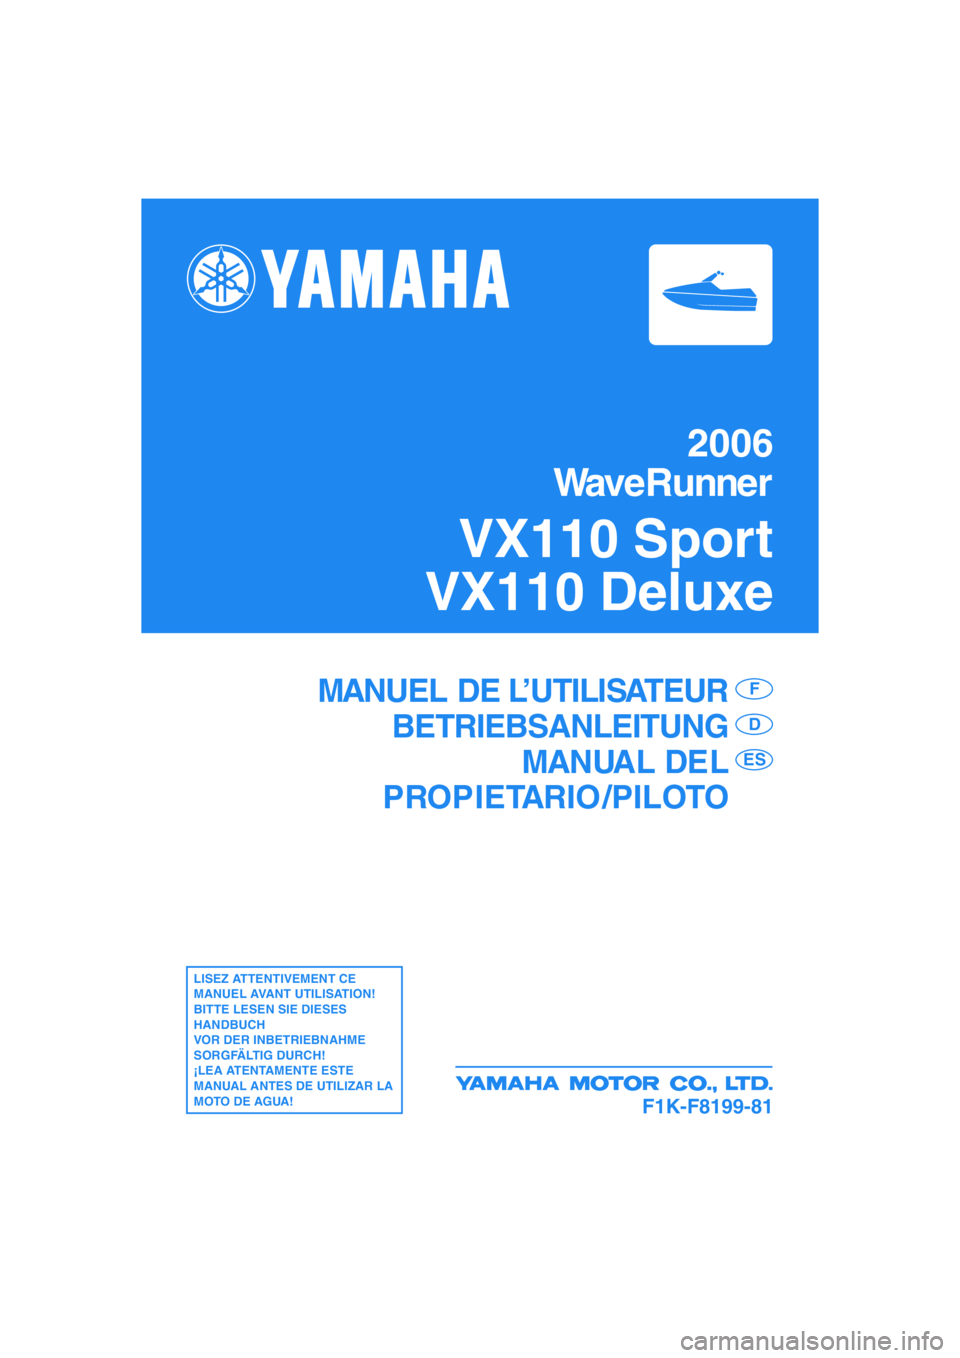 YAMAHA VX SPORT 2006  Manuale de Empleo (in Spanish) F1K-F8199-81
MANUEL DE L’UTILISATEUR
BETRIEBSANLEITUNG
MANUAL DEL
PROPIETARIO /PILOTOF
D
ES
LISEZ ATTENTIVEMENT CE 
MANUEL AVANT UTILISATION!
BITTE LESEN SIE DIESES 
HANDBUCH 
VOR DER INBETRIEBNAHME